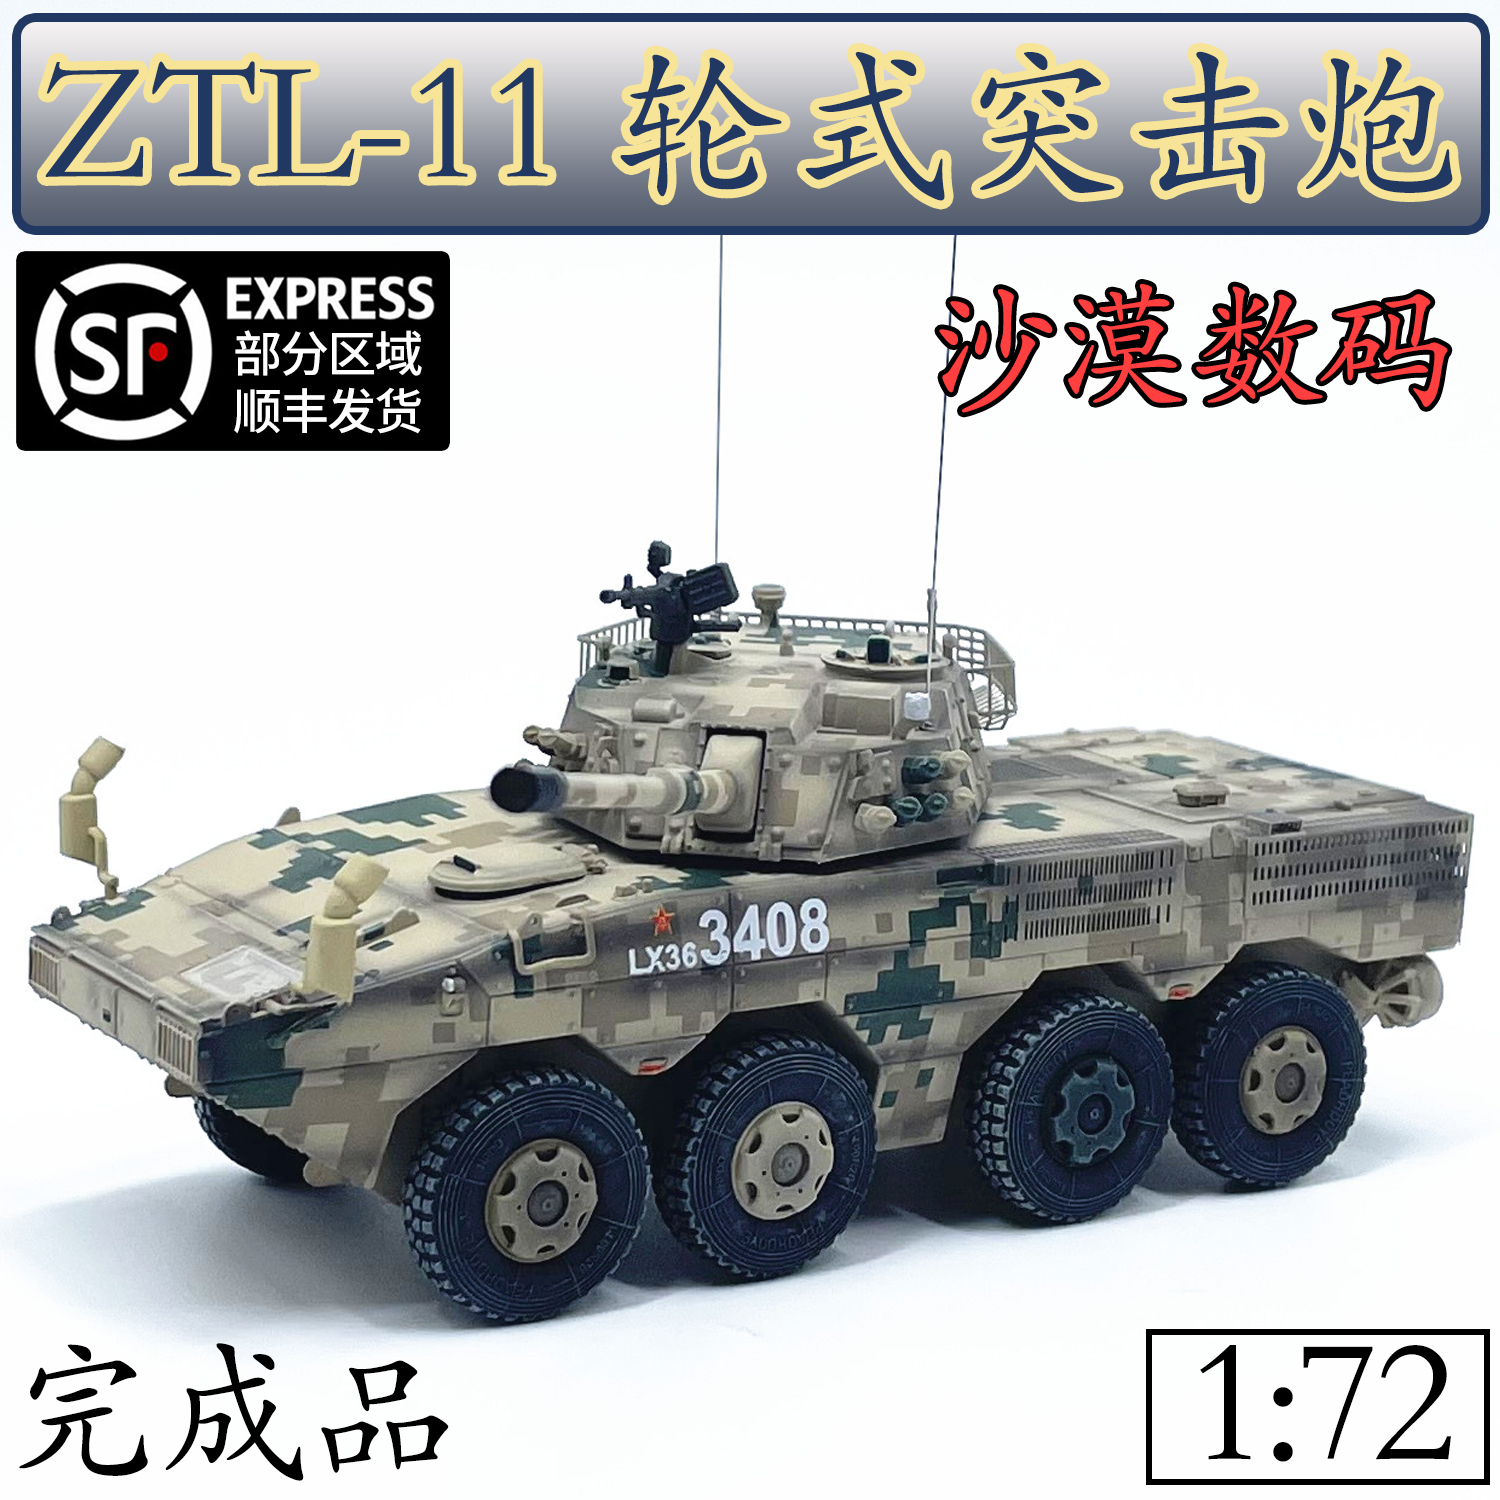 1:72中國ZTZ-96B主戰坦克96式附加裝甲2017比賽數碼迷彩成品模型 